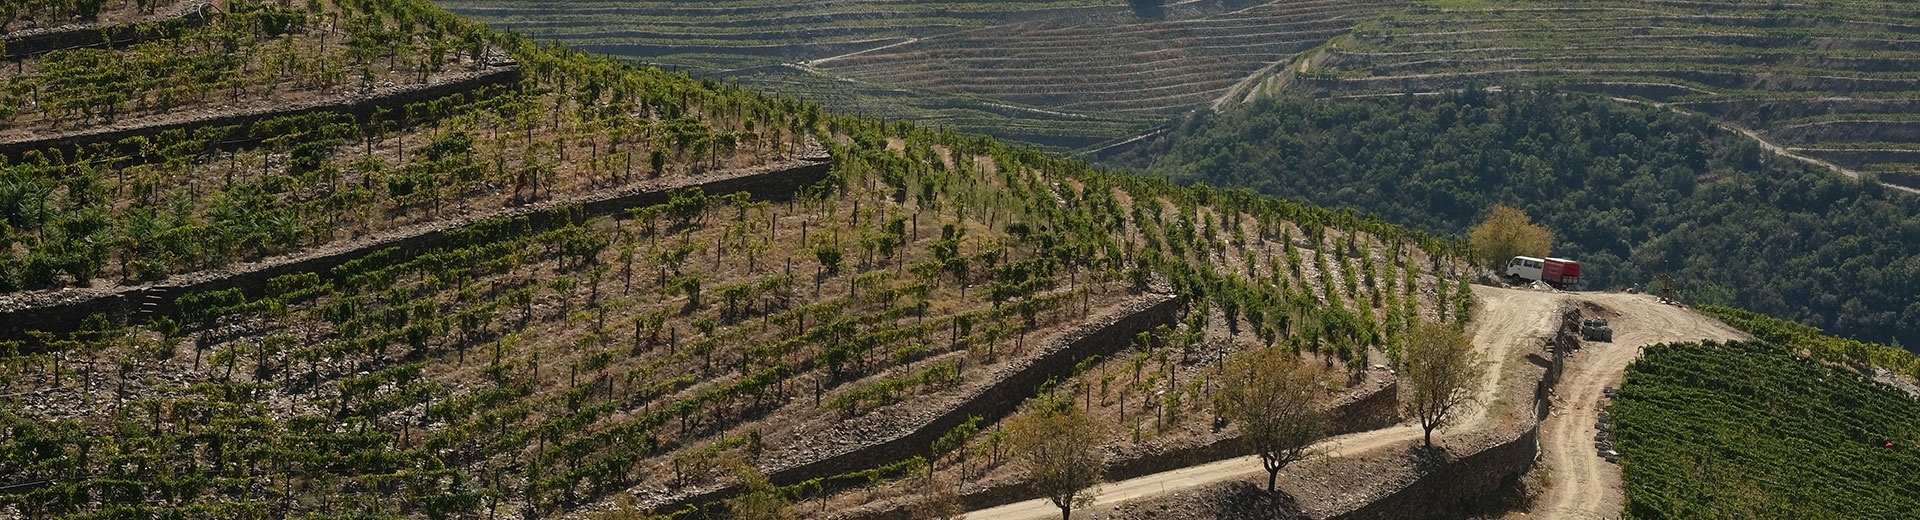 Vinhos do Douro e Porto